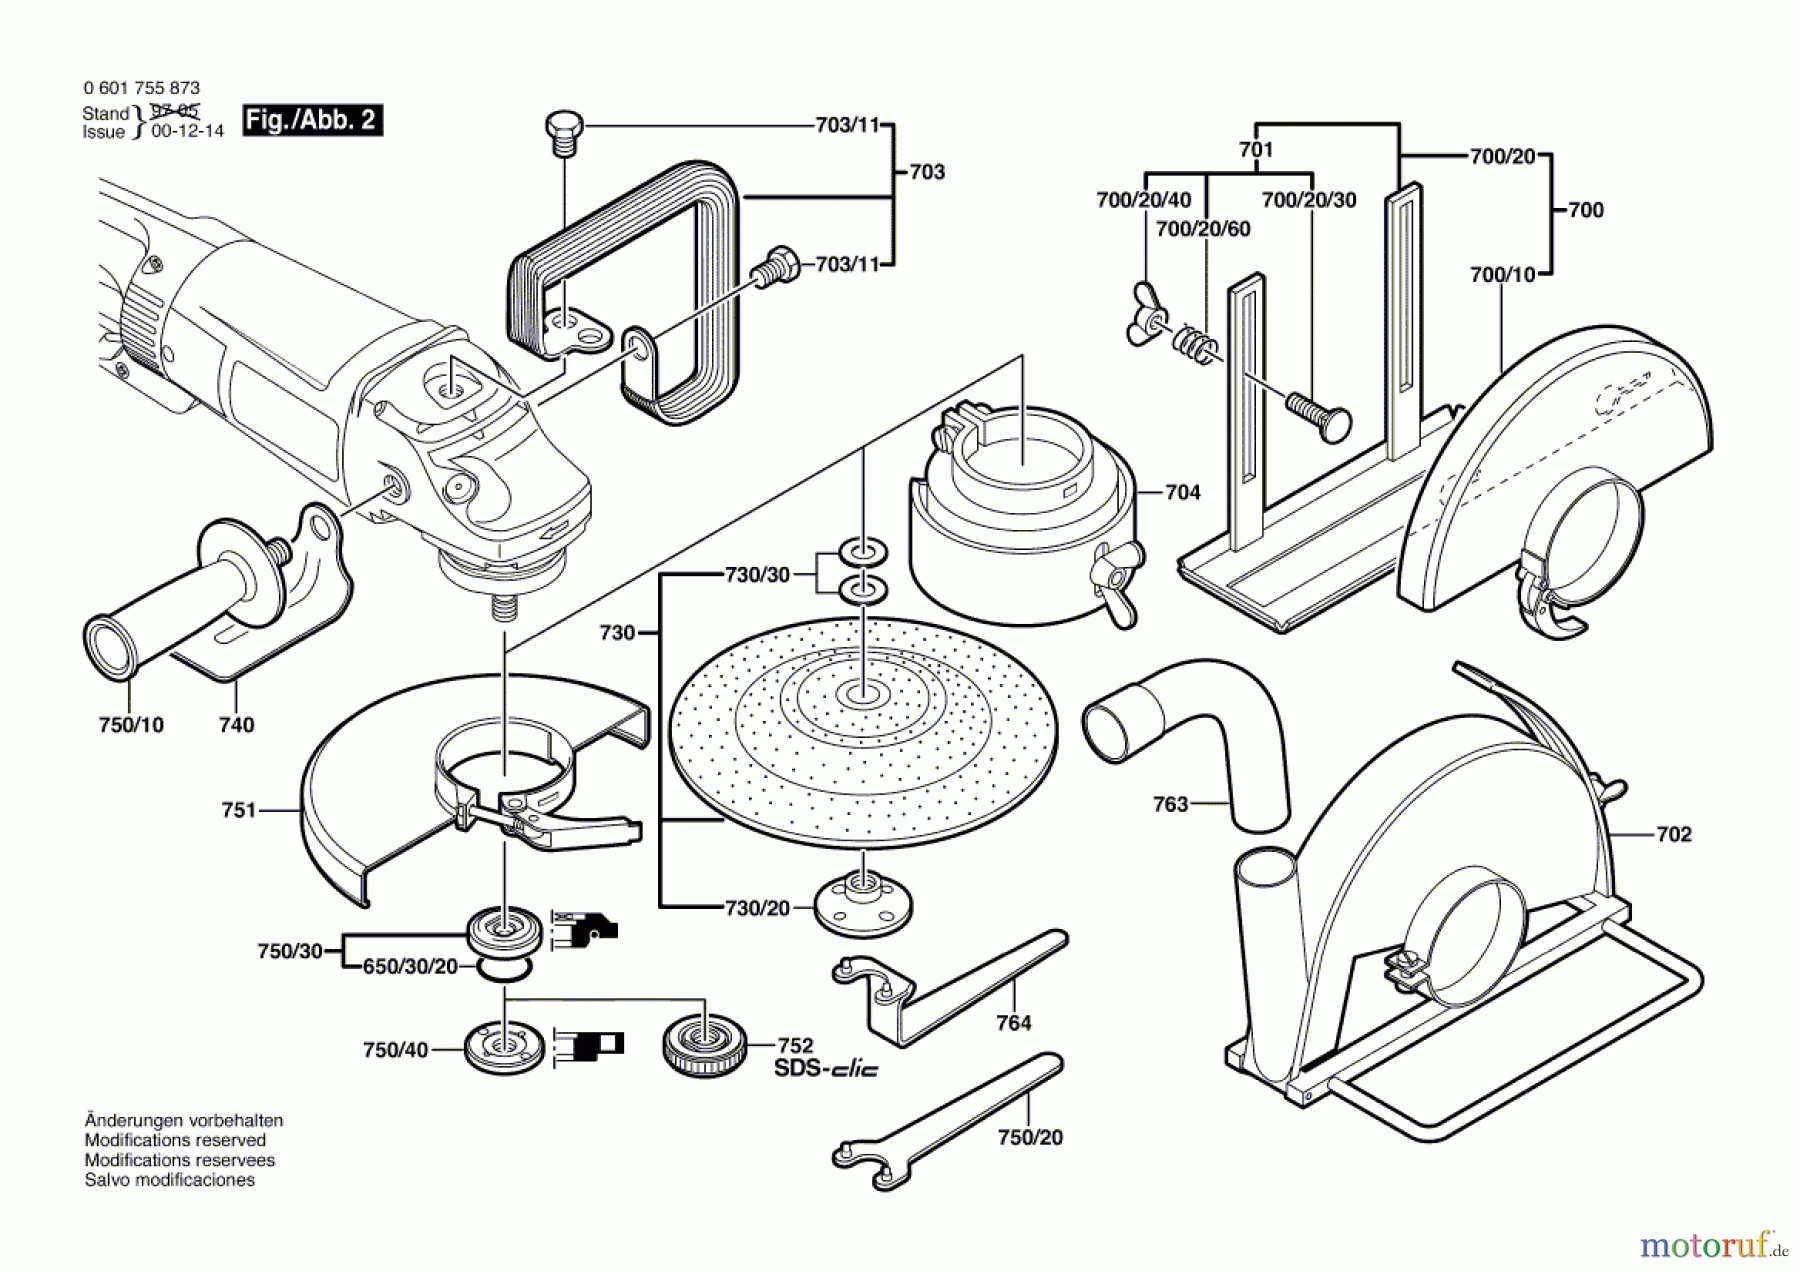  Bosch Werkzeug Winkelschleifer GWS 25-180 J Seite 2